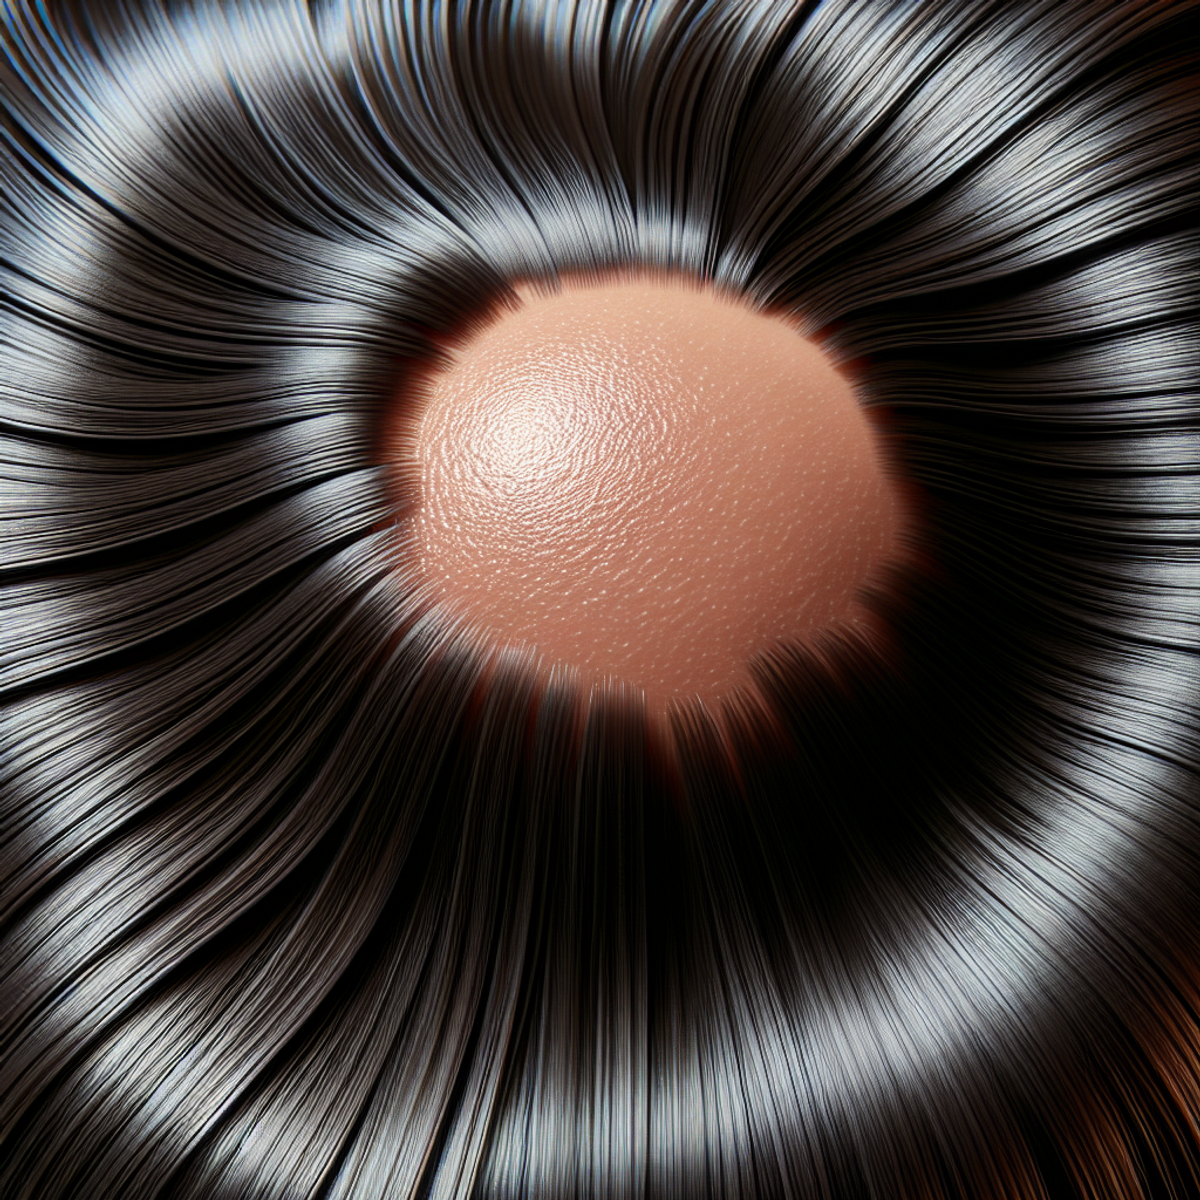 Un primo piano di un cuoio capelluto sano con ciocche di capelli lucenti e lisce.